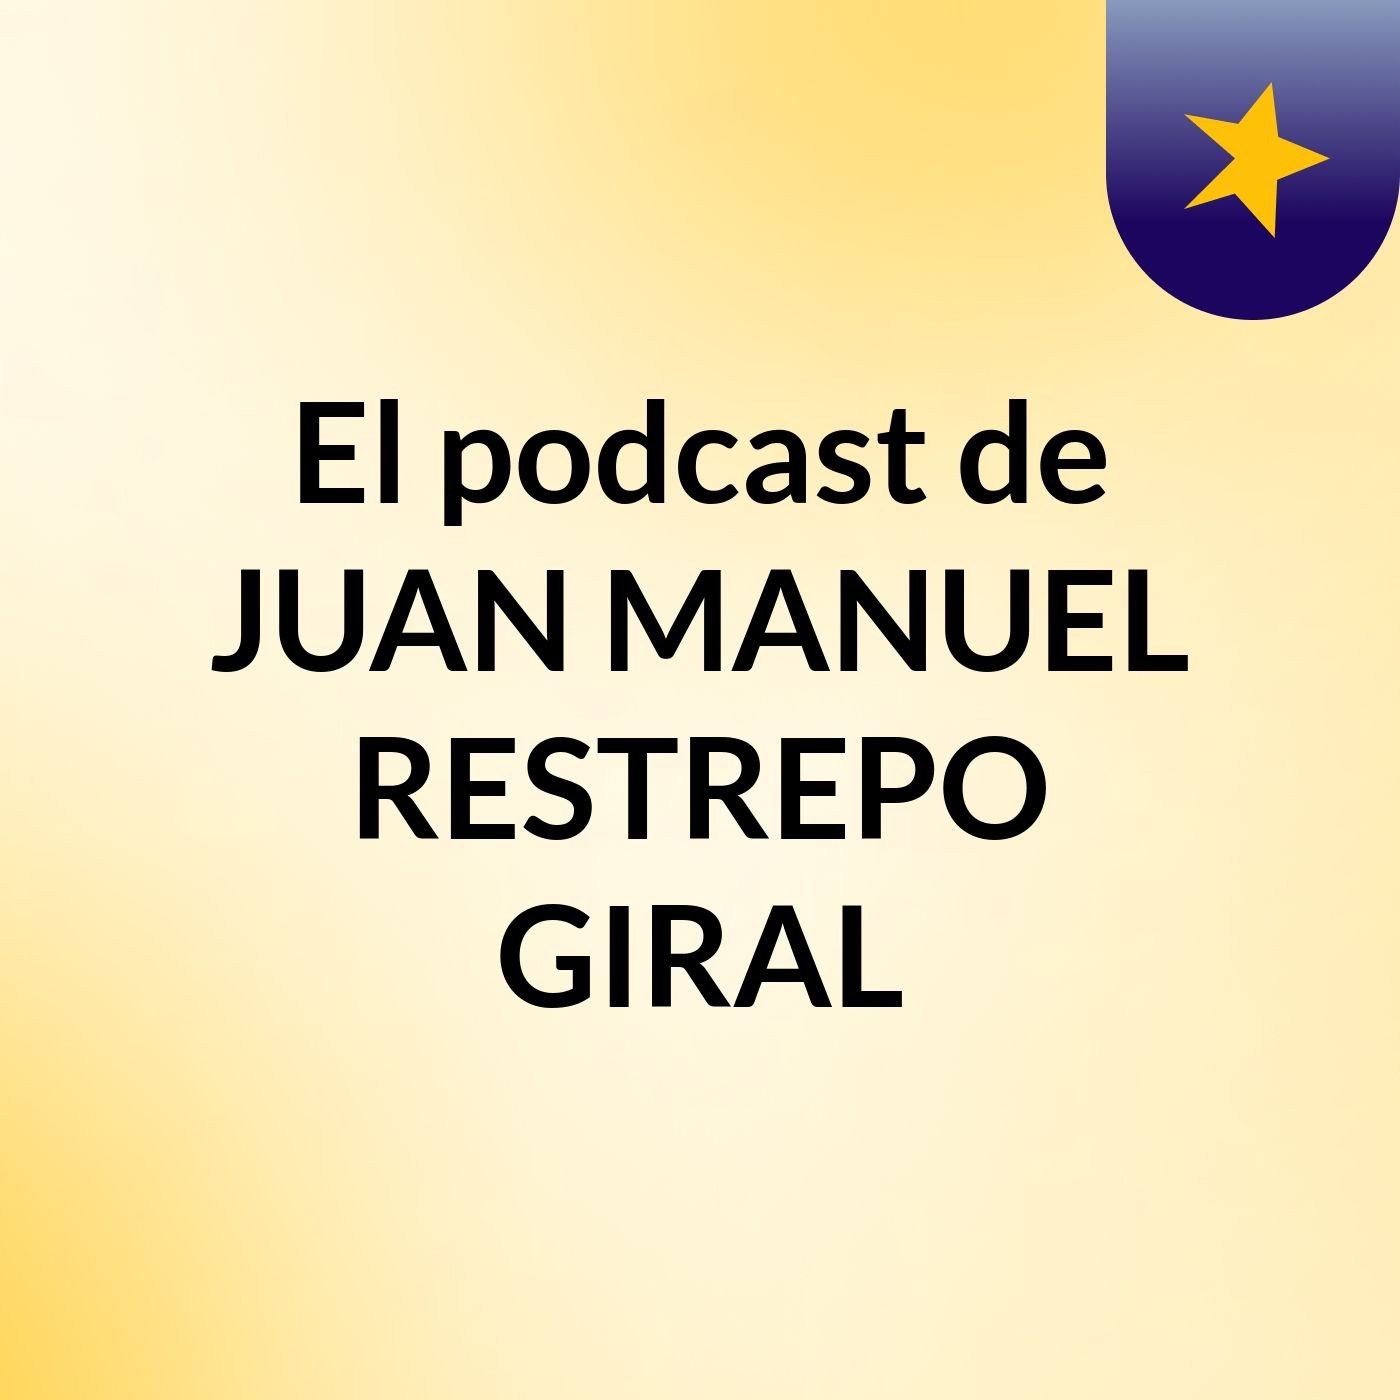 Juan manuel restrepo